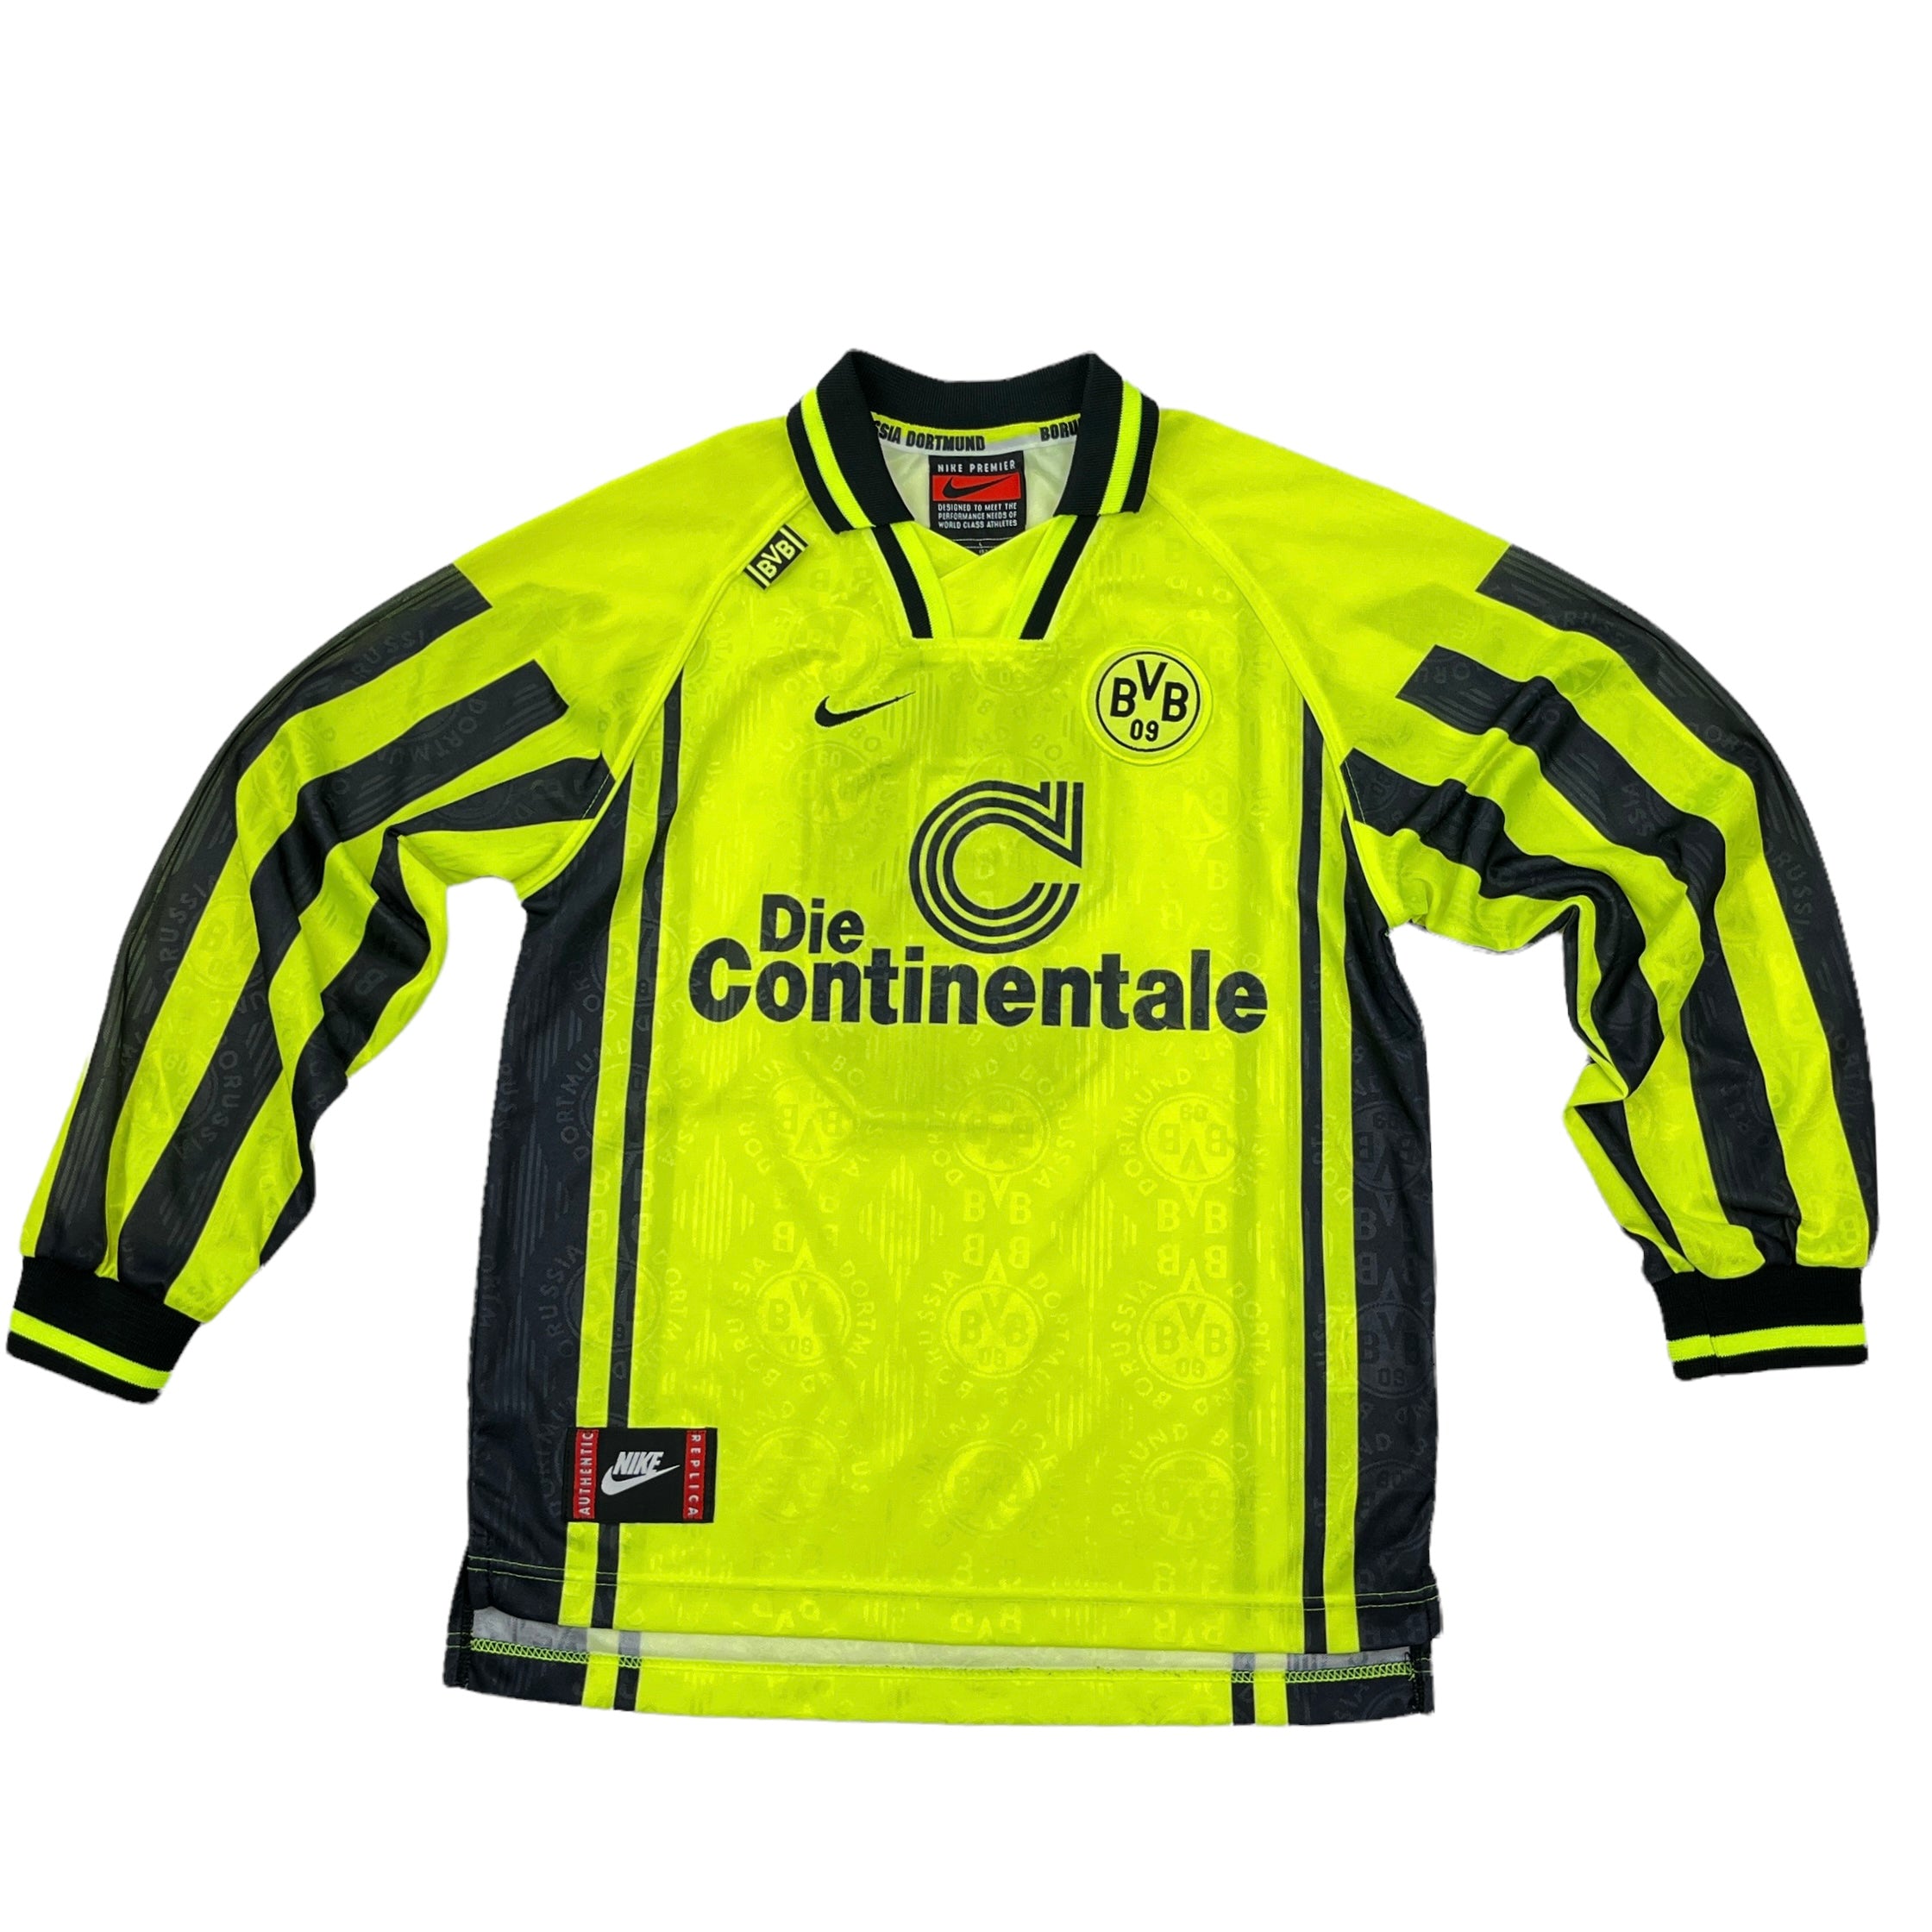 grens Opsommen bedriegen 01060 Nike Borussia Dortmund Longsleeve 96/97 Home Jersey – PAUL'S FANSHOP